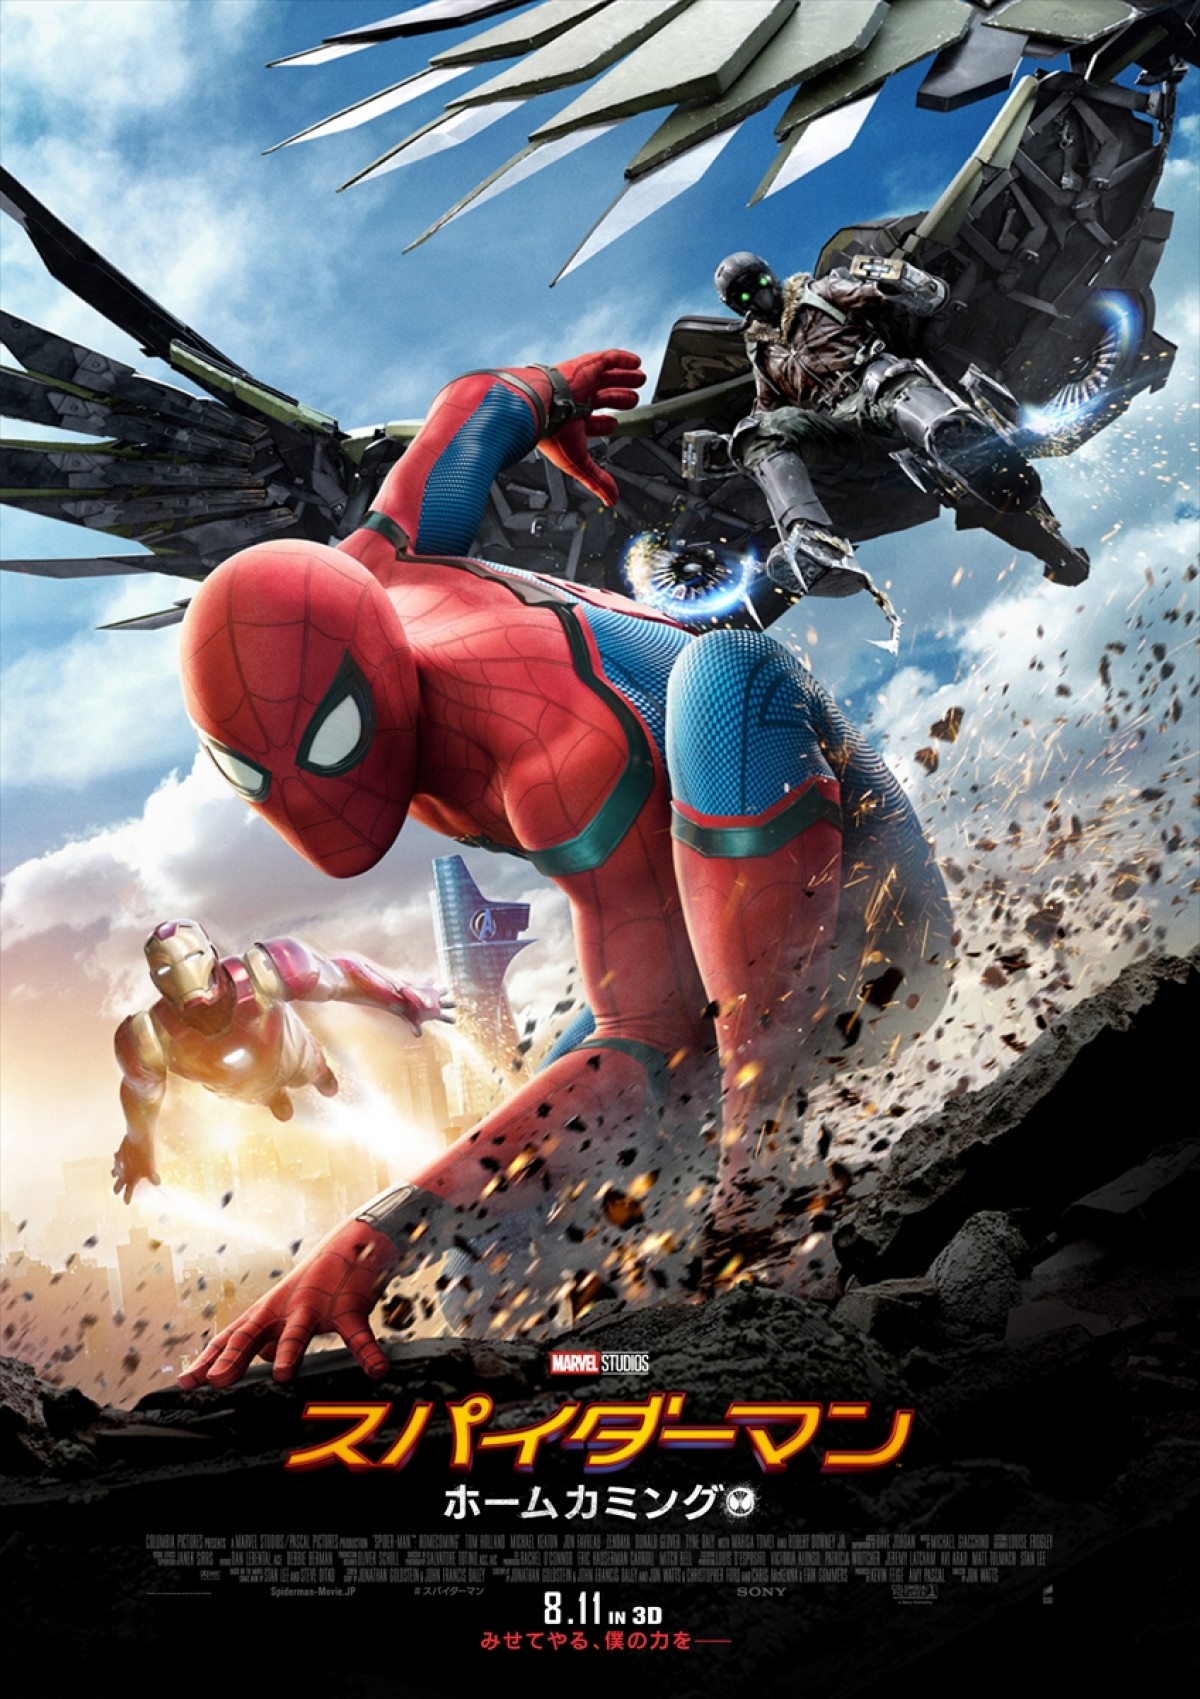 【映画ランキング】『怪盗グルー』V4で興収40億円突破 『スパイダーマン』は2位発進